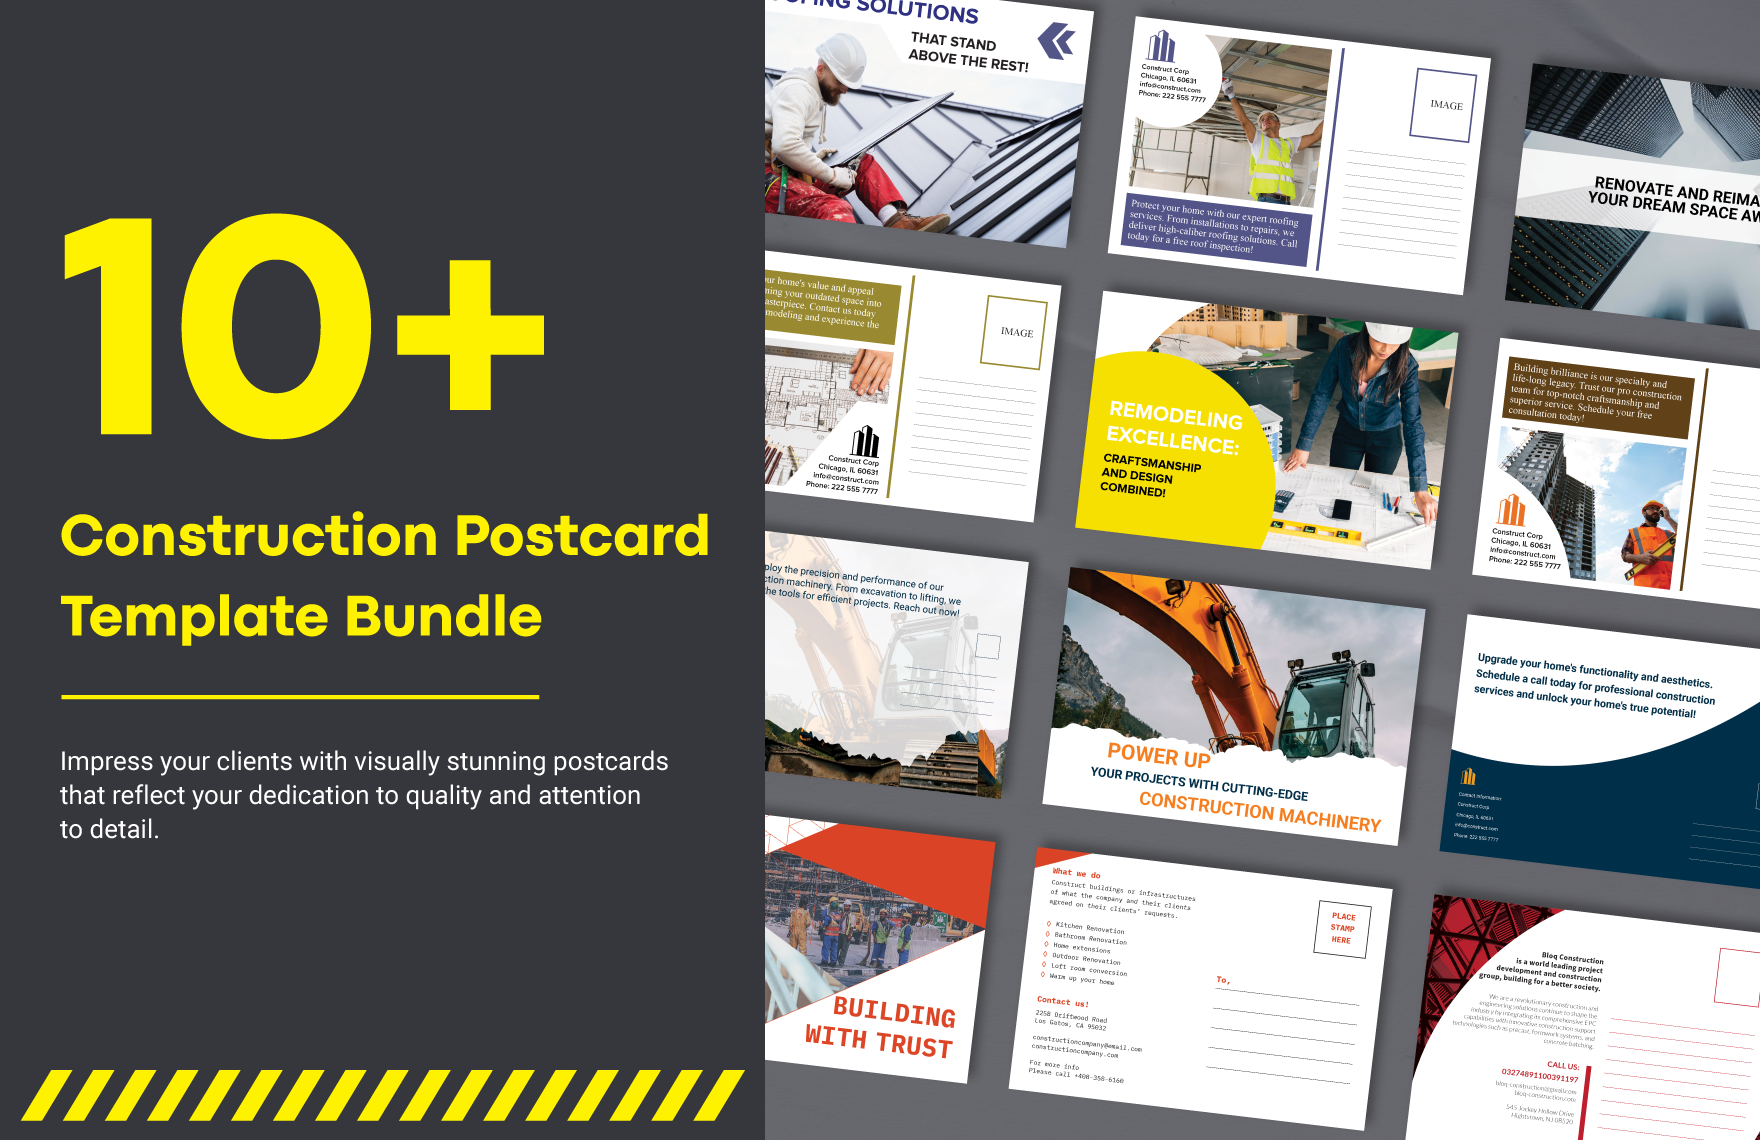 10+ Construction Postcard Template Bundle